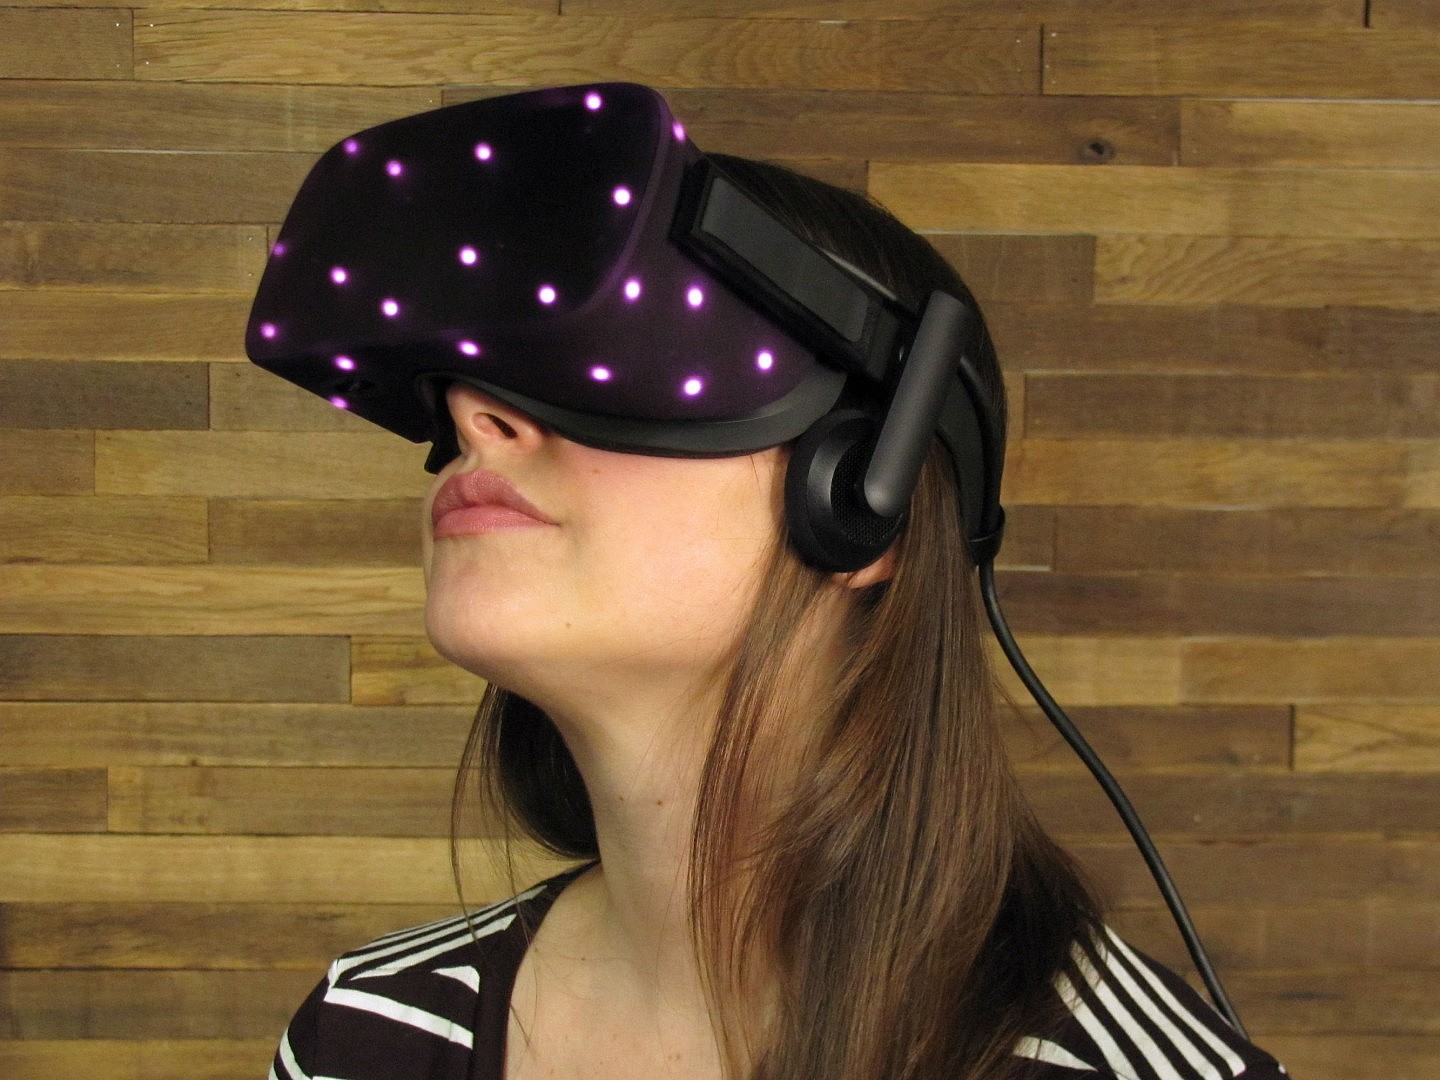 ในที่สุด Oculus Rift CV1 แว่น VR ก็ถูกชำแหละลงเป็นที่เรียบร้อยแล้ว